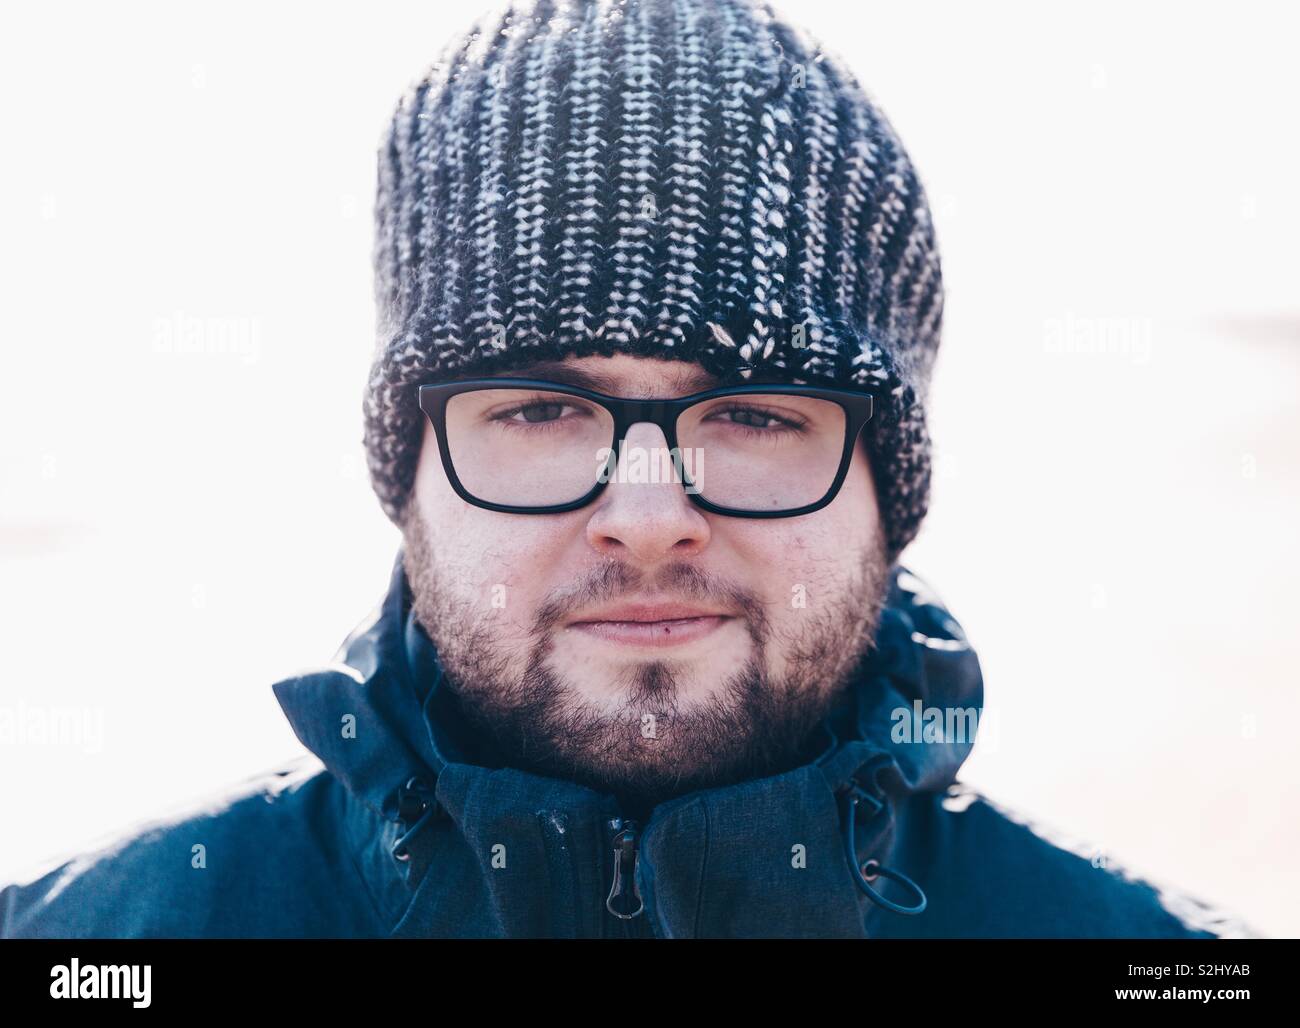 Ein Porträt der jungen männlichen Abenteurer mit Brille und Bart tragen  eine dicke Mütze und warme Winterkleidung während direkt in die Kamera  schaut Stockfotografie - Alamy